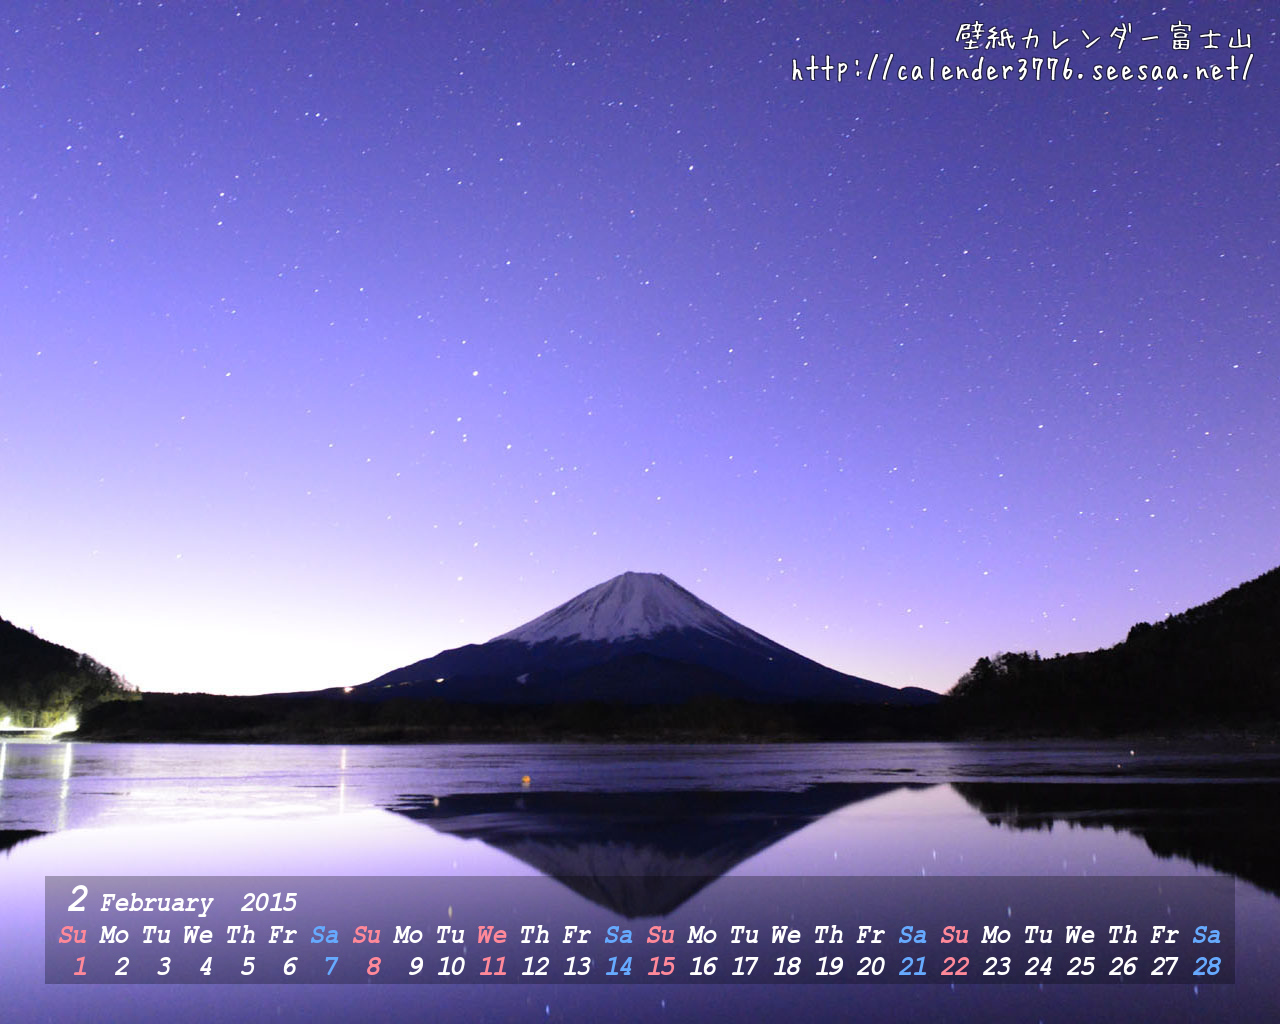 壁紙カレンダー富士山 15年2月 精進湖夜明け 1280 1024 壁紙 カレンダー 富士山